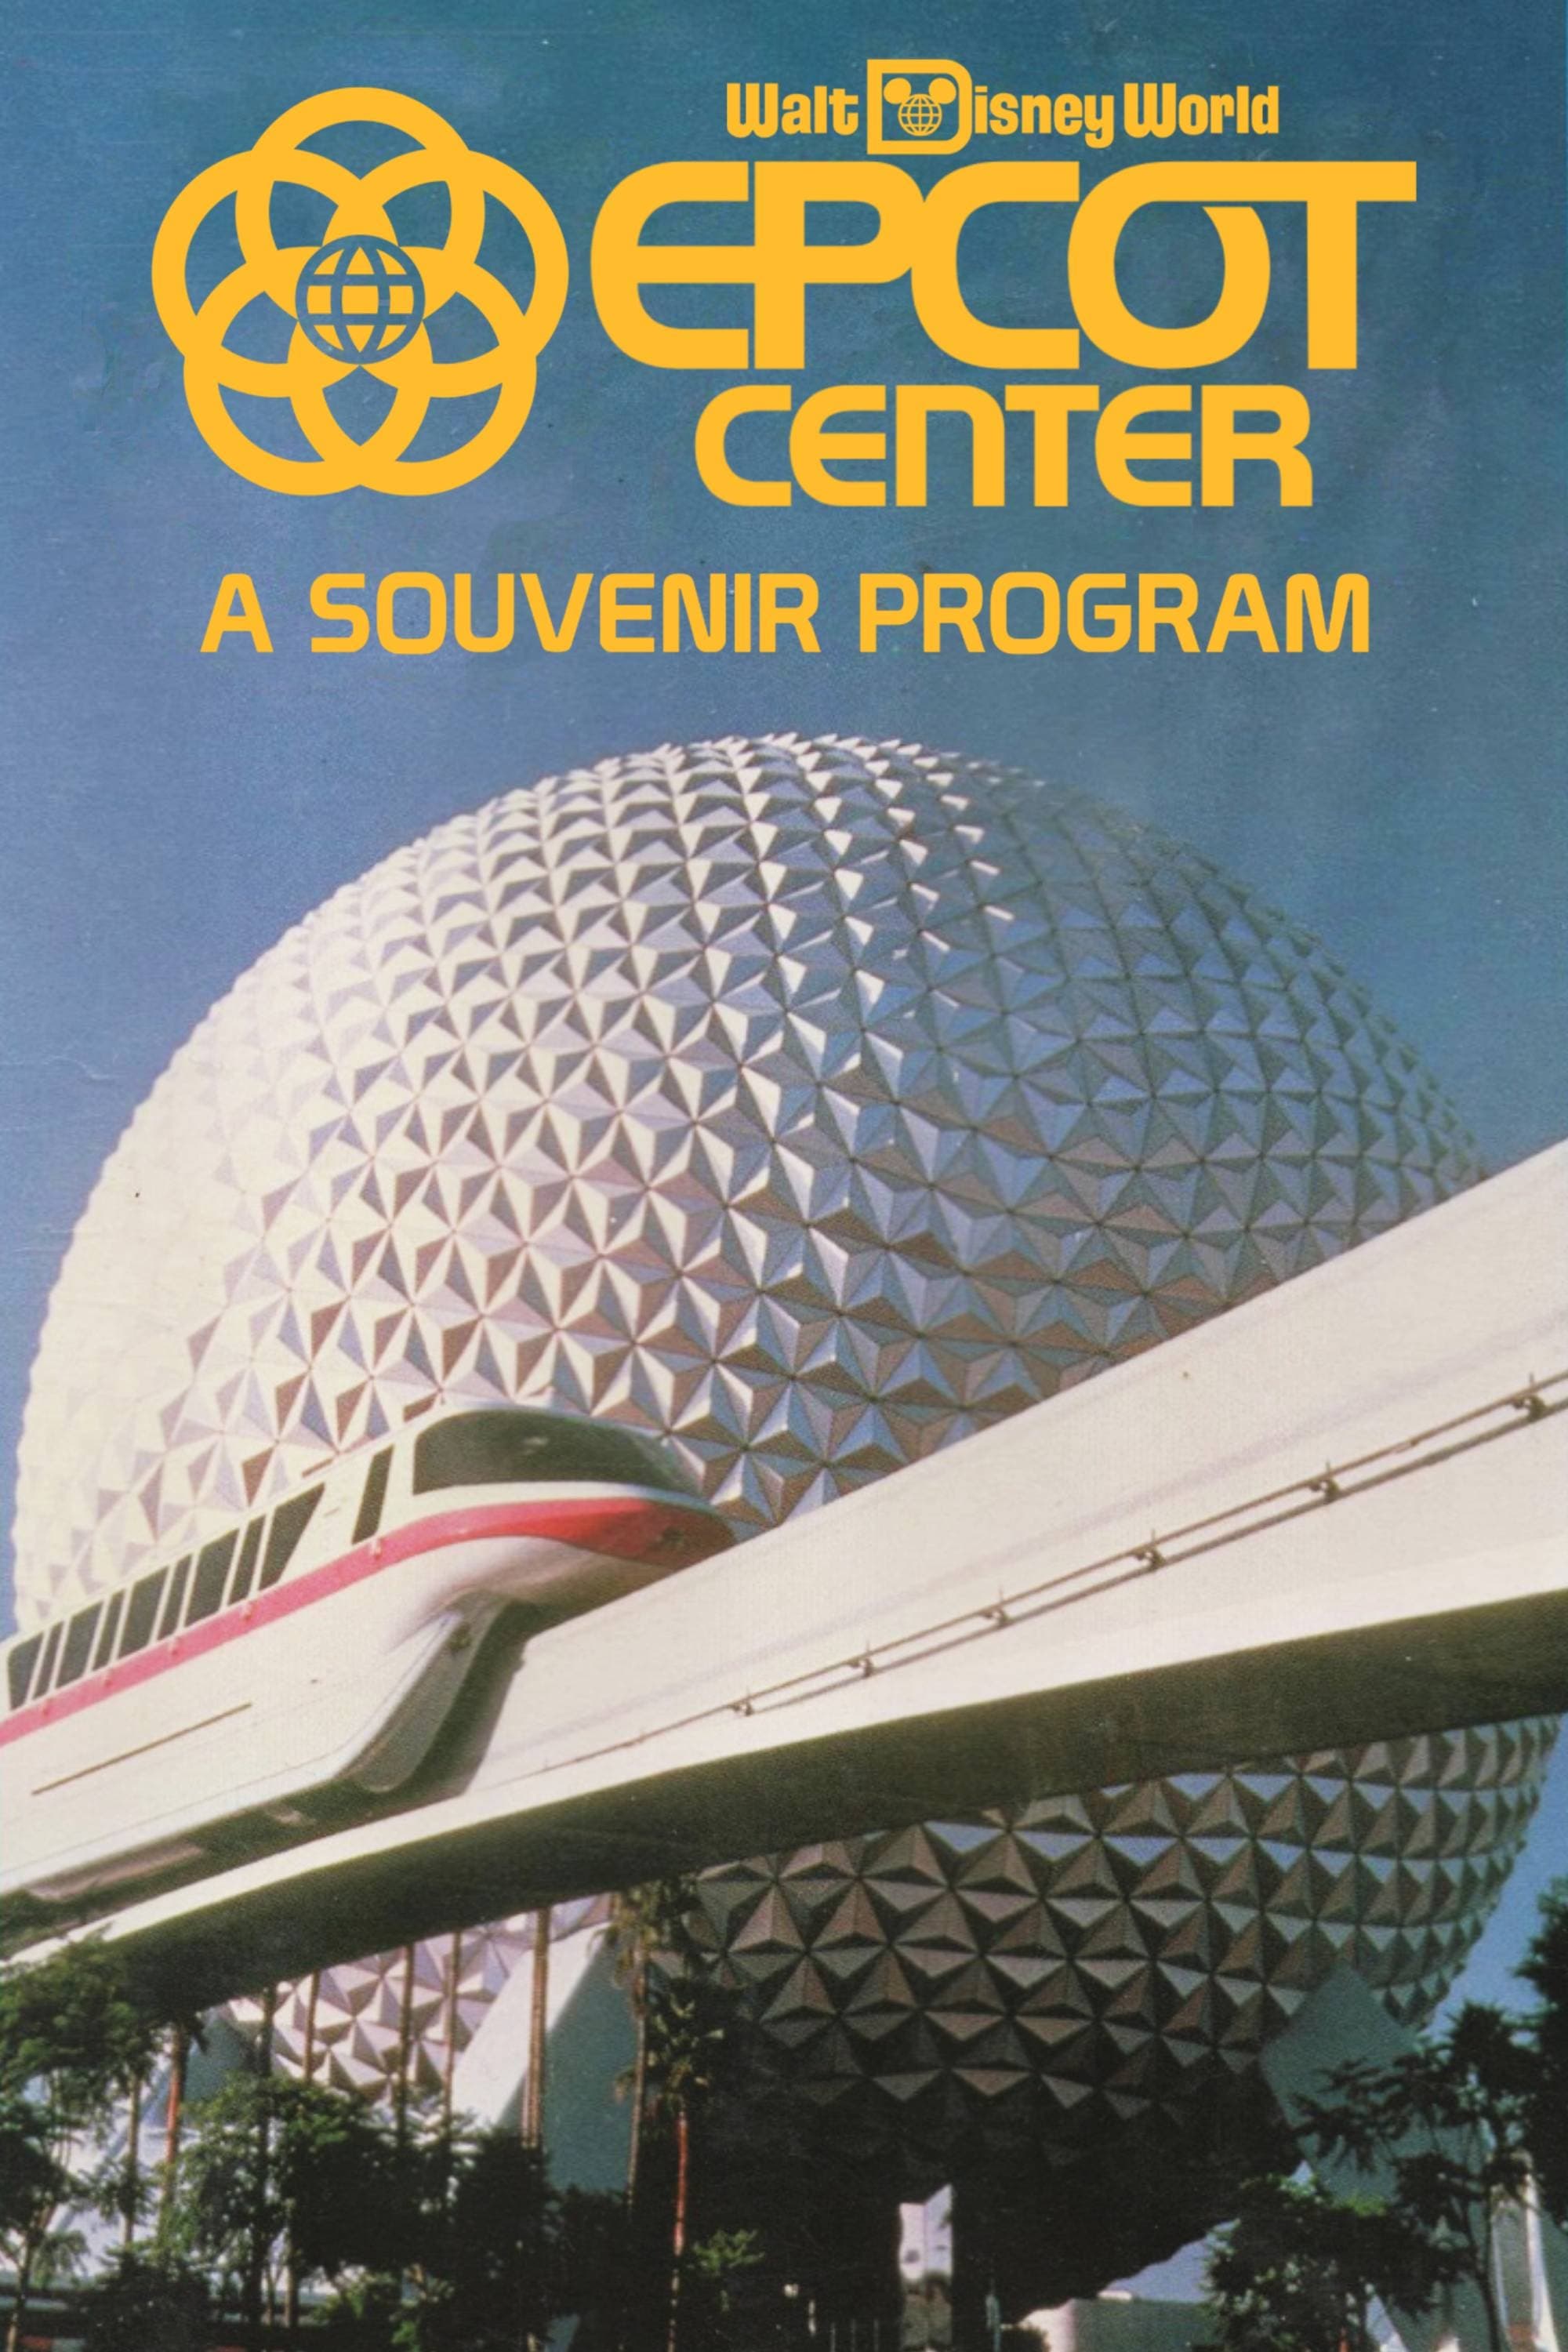 EPCOT Center: A Souvenir Program film